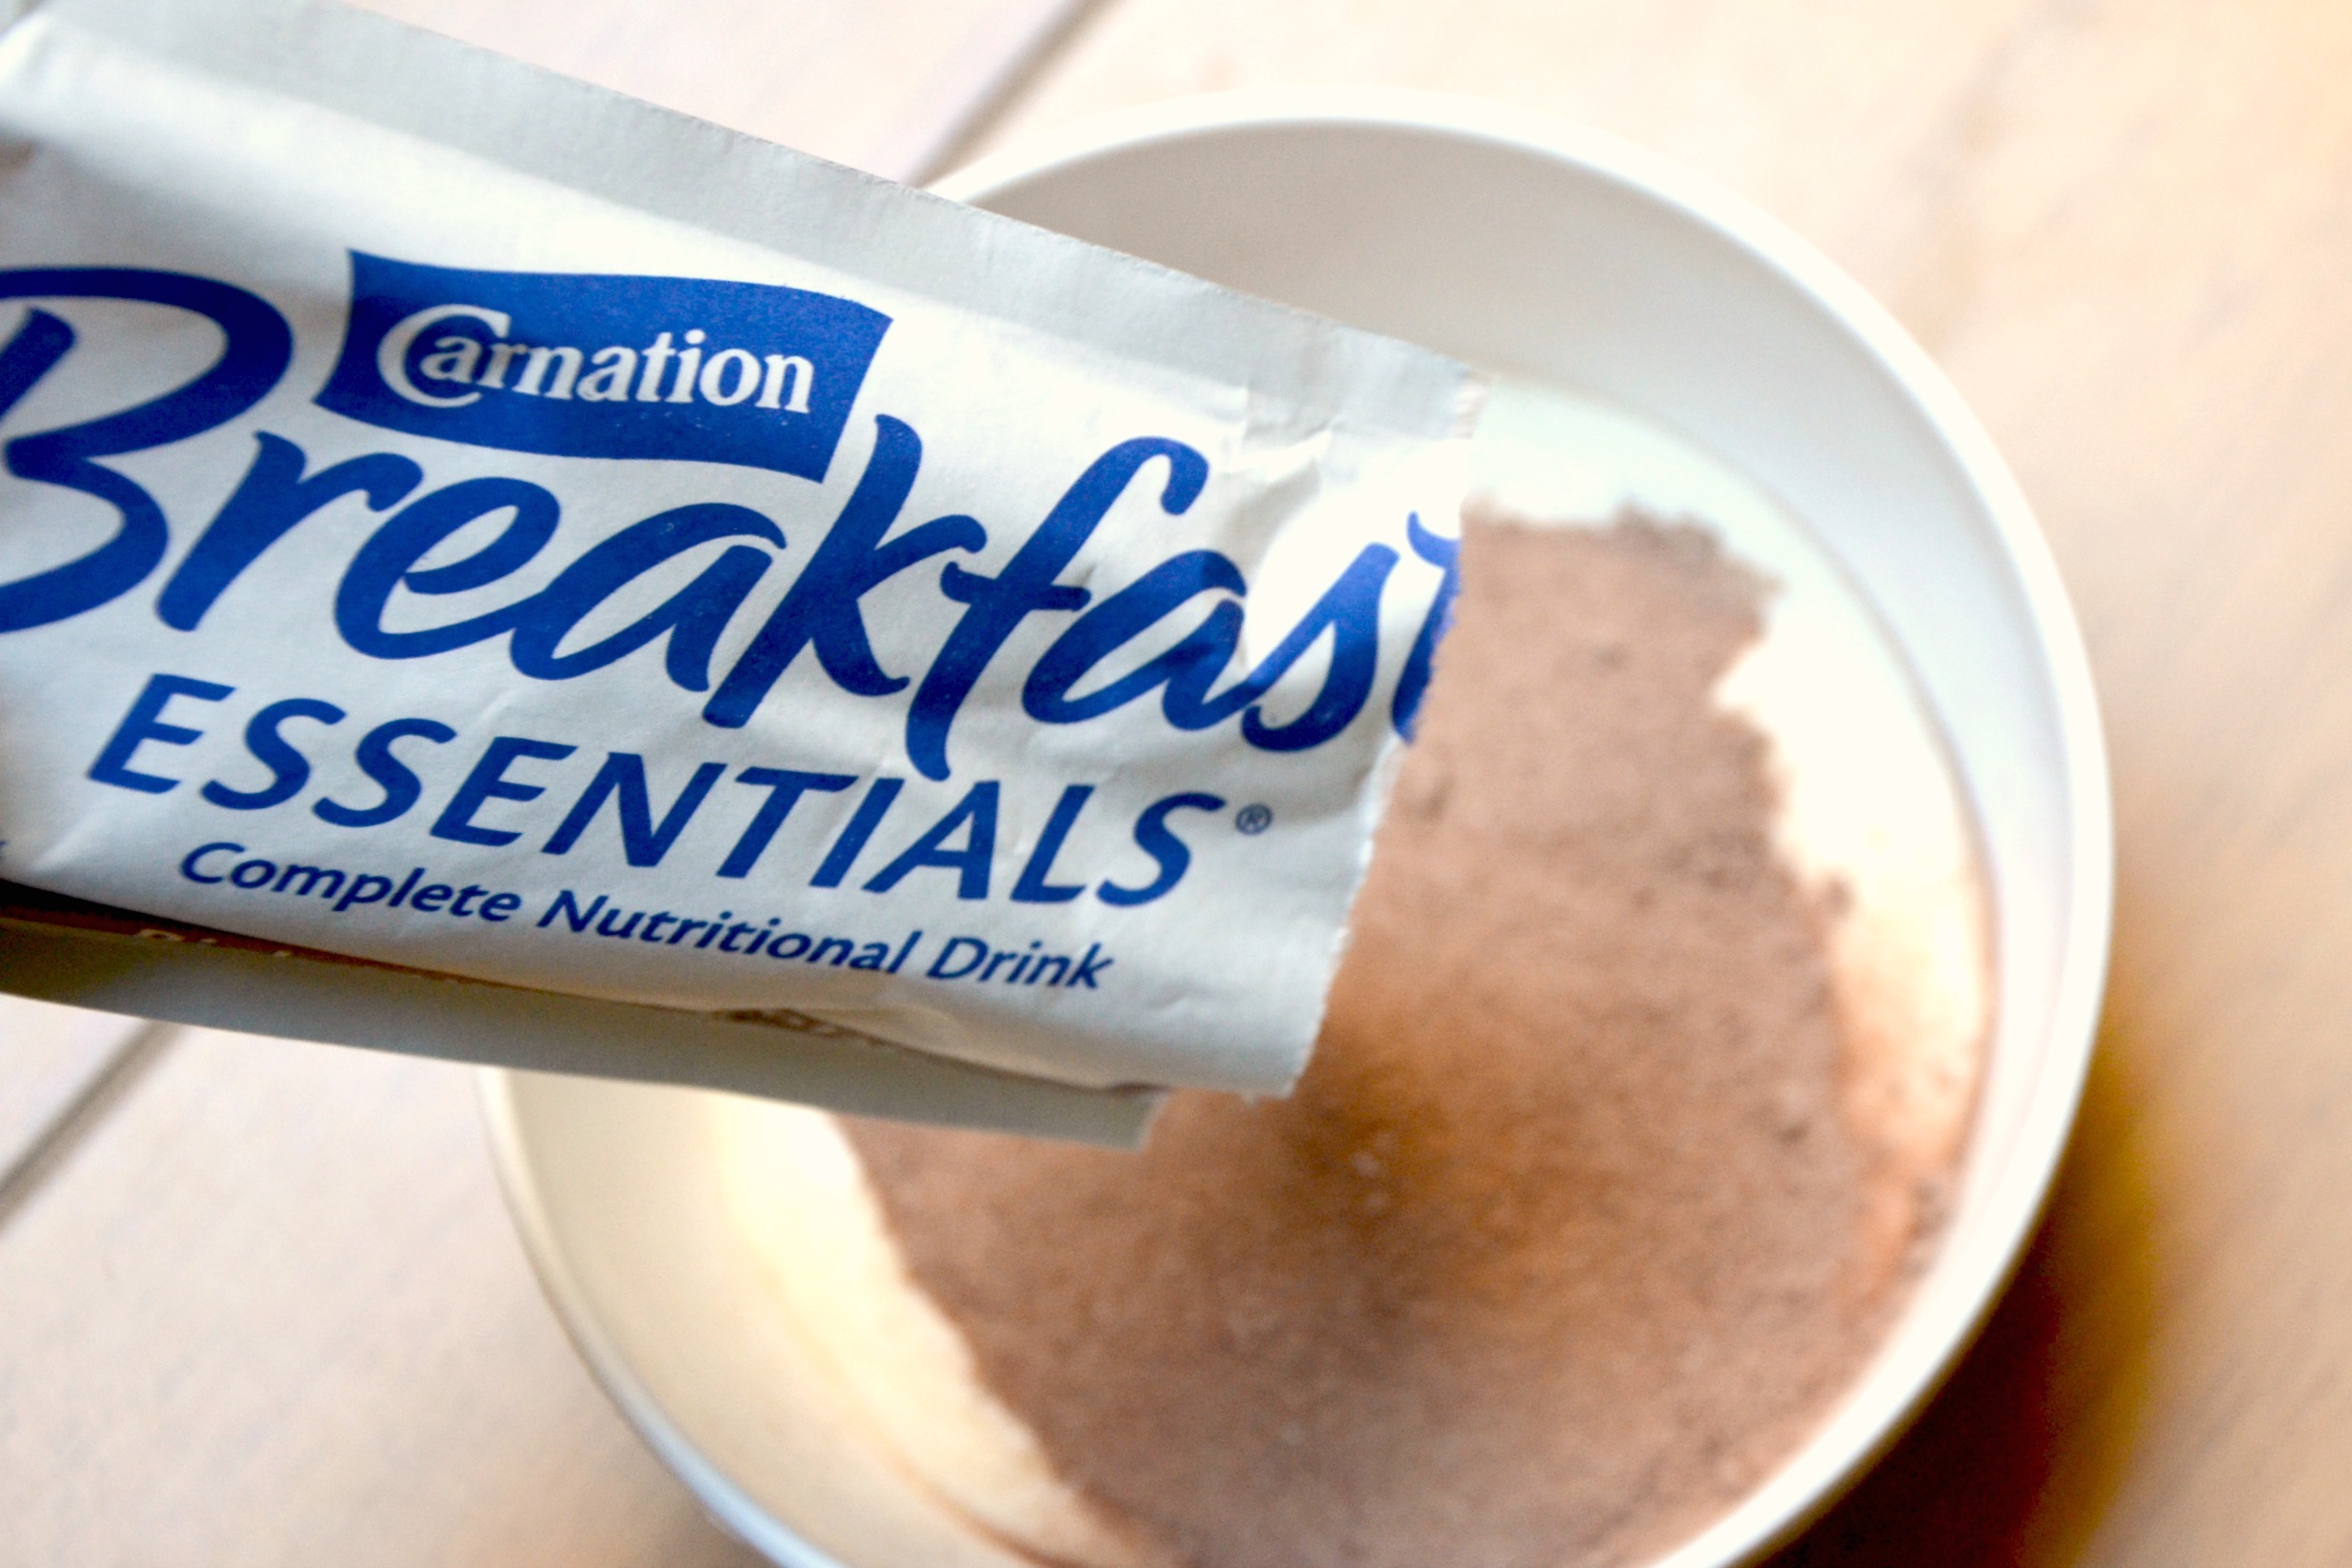 Carnation Breakfast Essentials packet